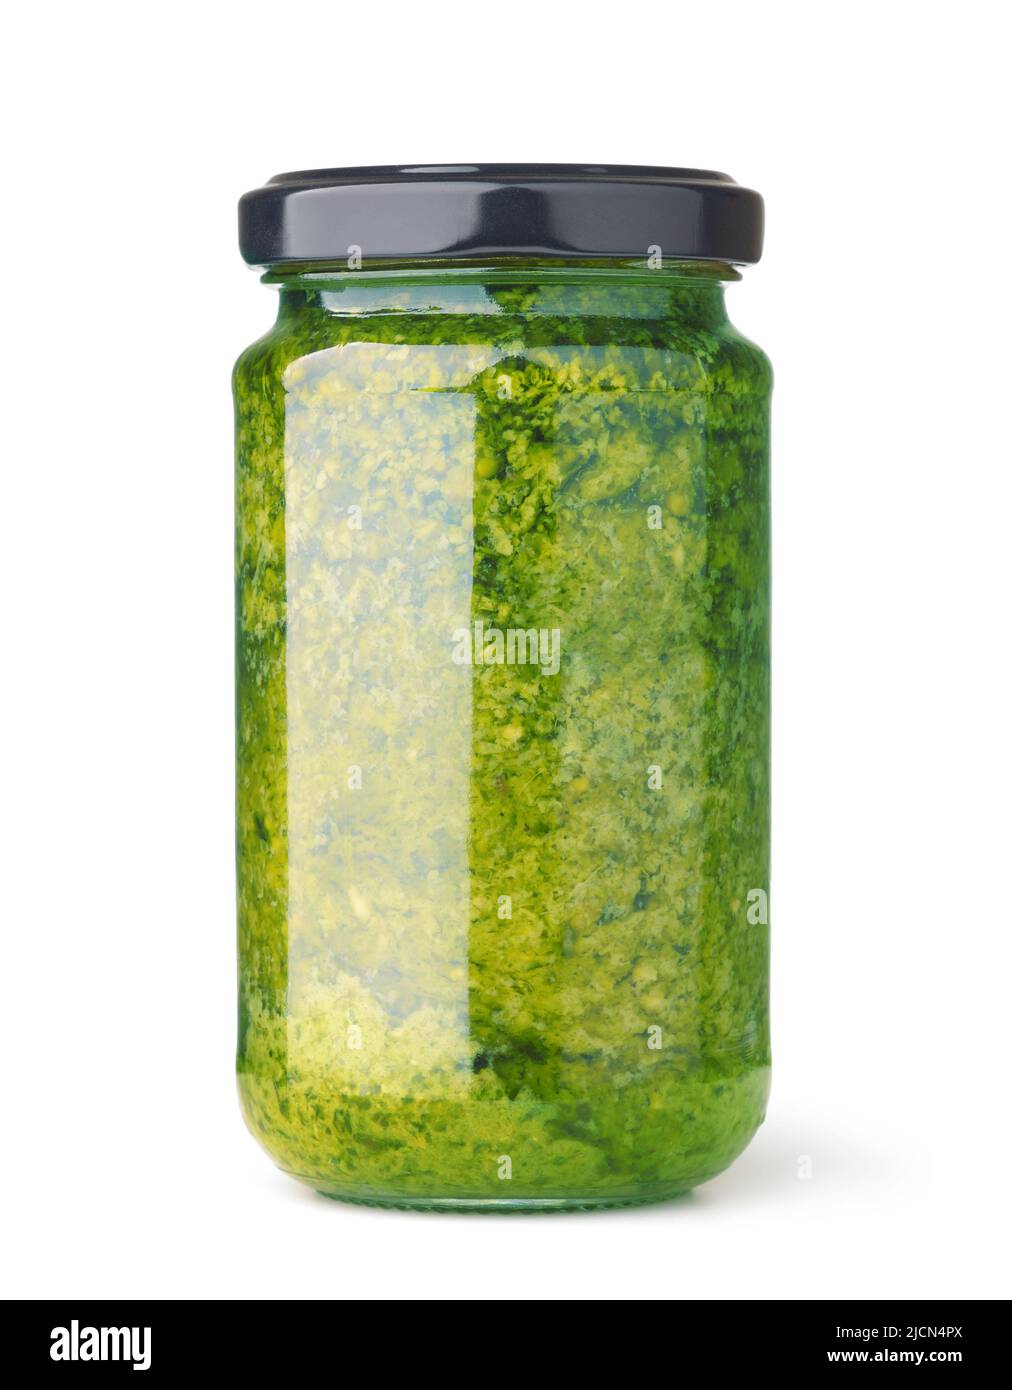 Glas mit grüner Pesto-Sauce, unbeschriftet, auf Weiß isoliert Stockfoto